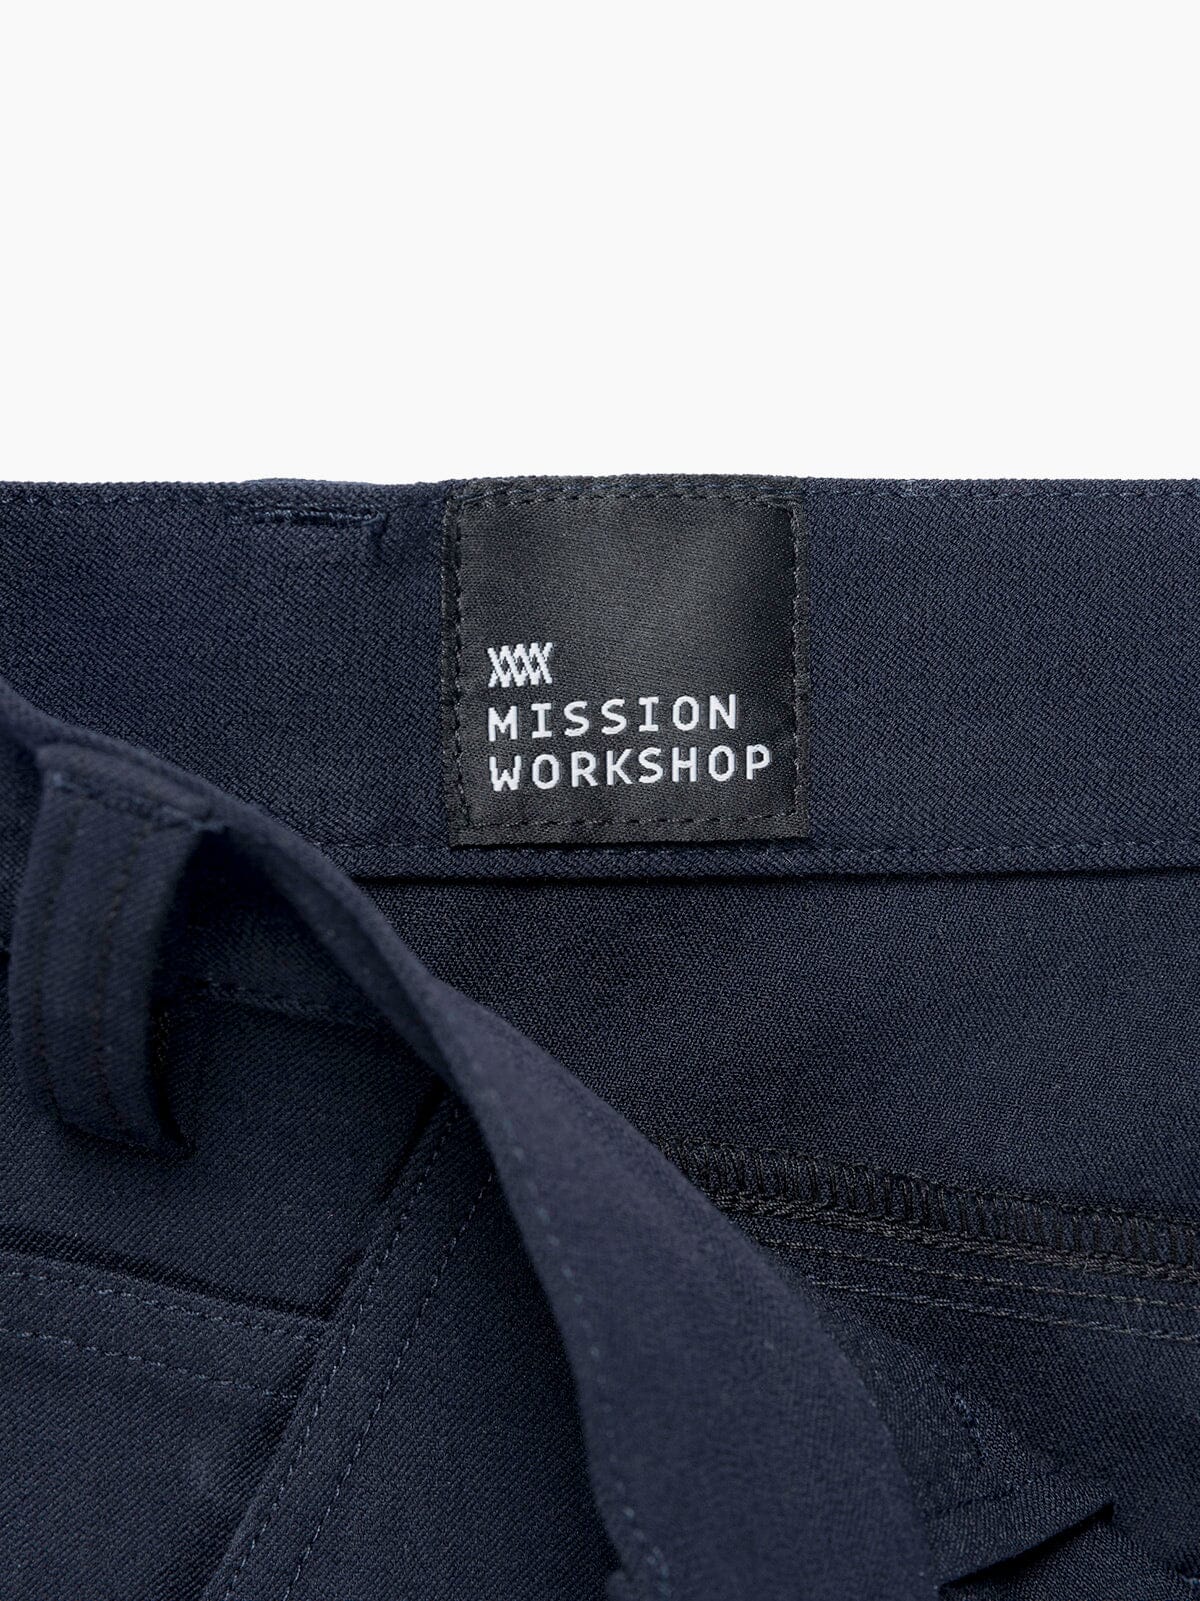 Paragon by Mission Workshop - Säänkestävät laukut ja tekniset vaatteet - San Francisco & Los Angeles - Rakennettu kestämään - ikuinen takuu